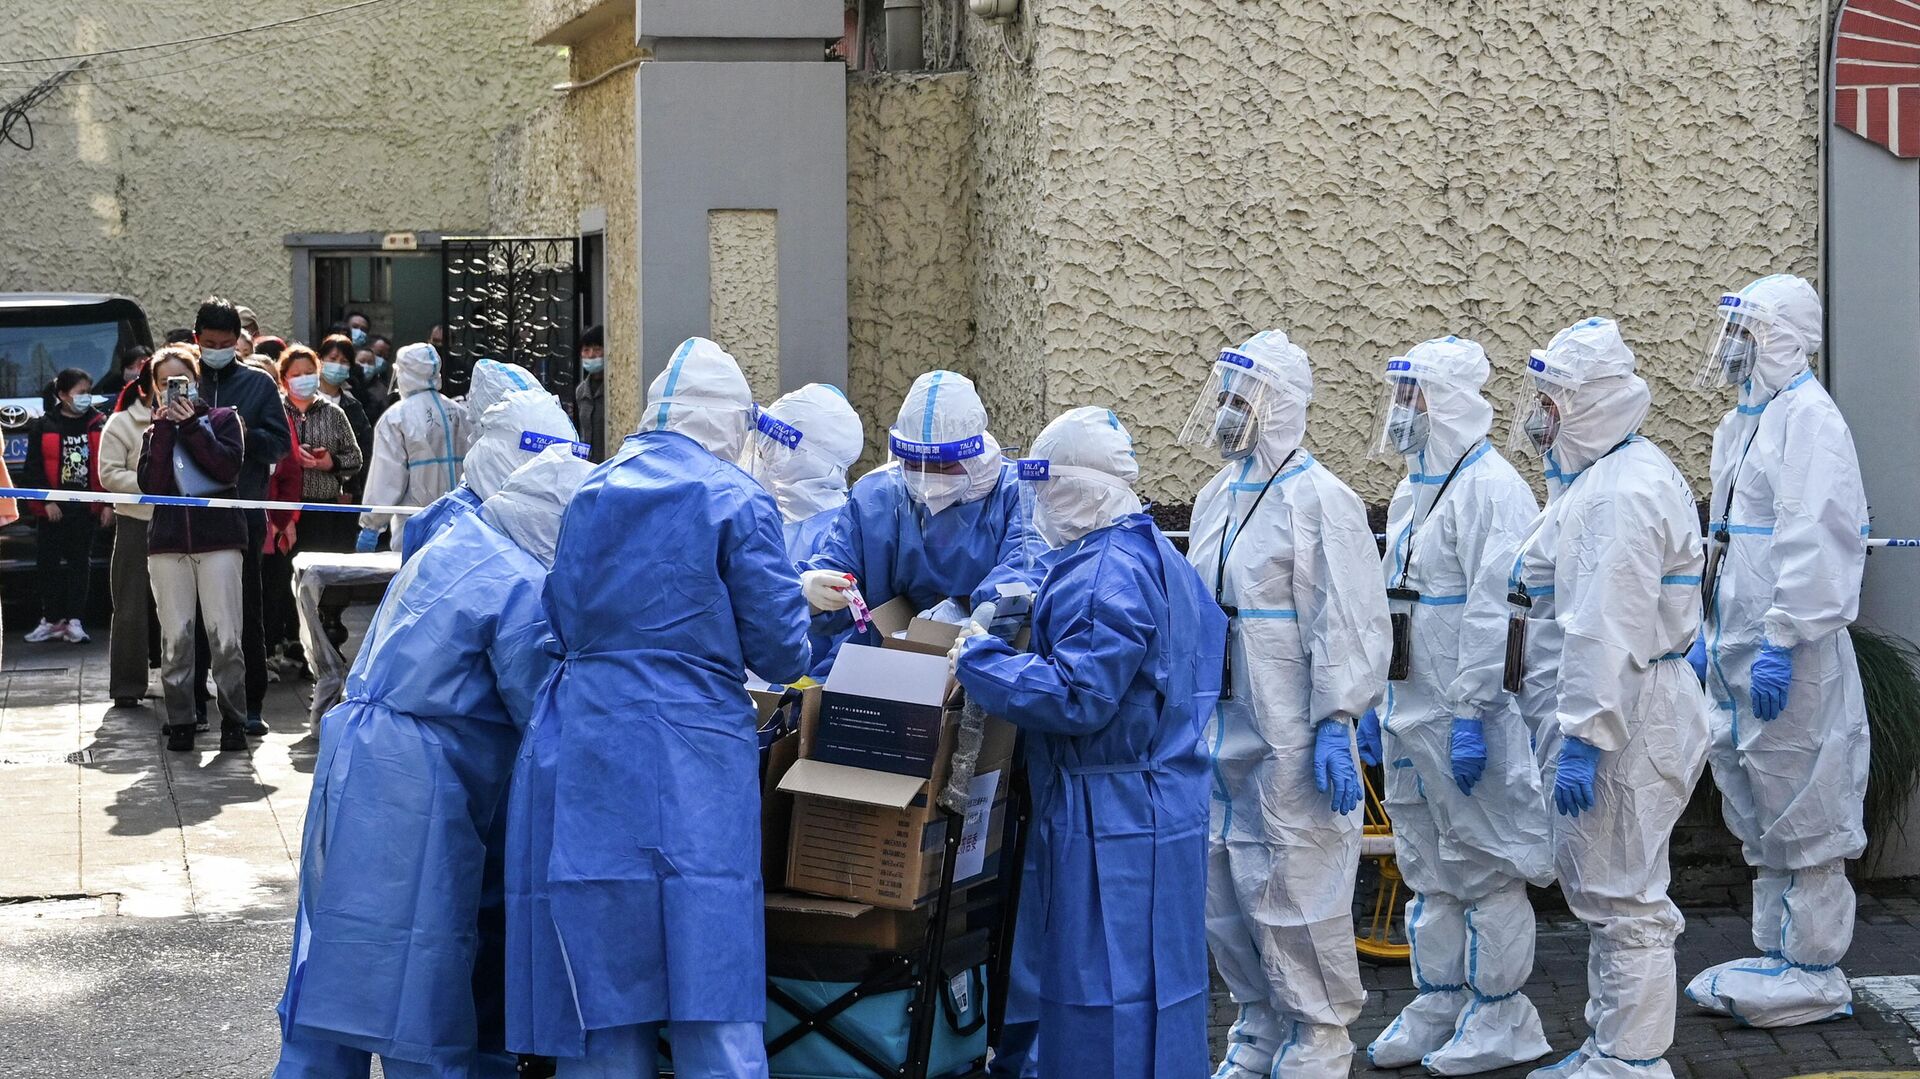 Медицинские работники в защитных костюмах готовят оборудование перед тестированием людей на Covid-19 в жилом комплексе в Шанхае - Sputnik Азербайджан, 1920, 13.04.2022